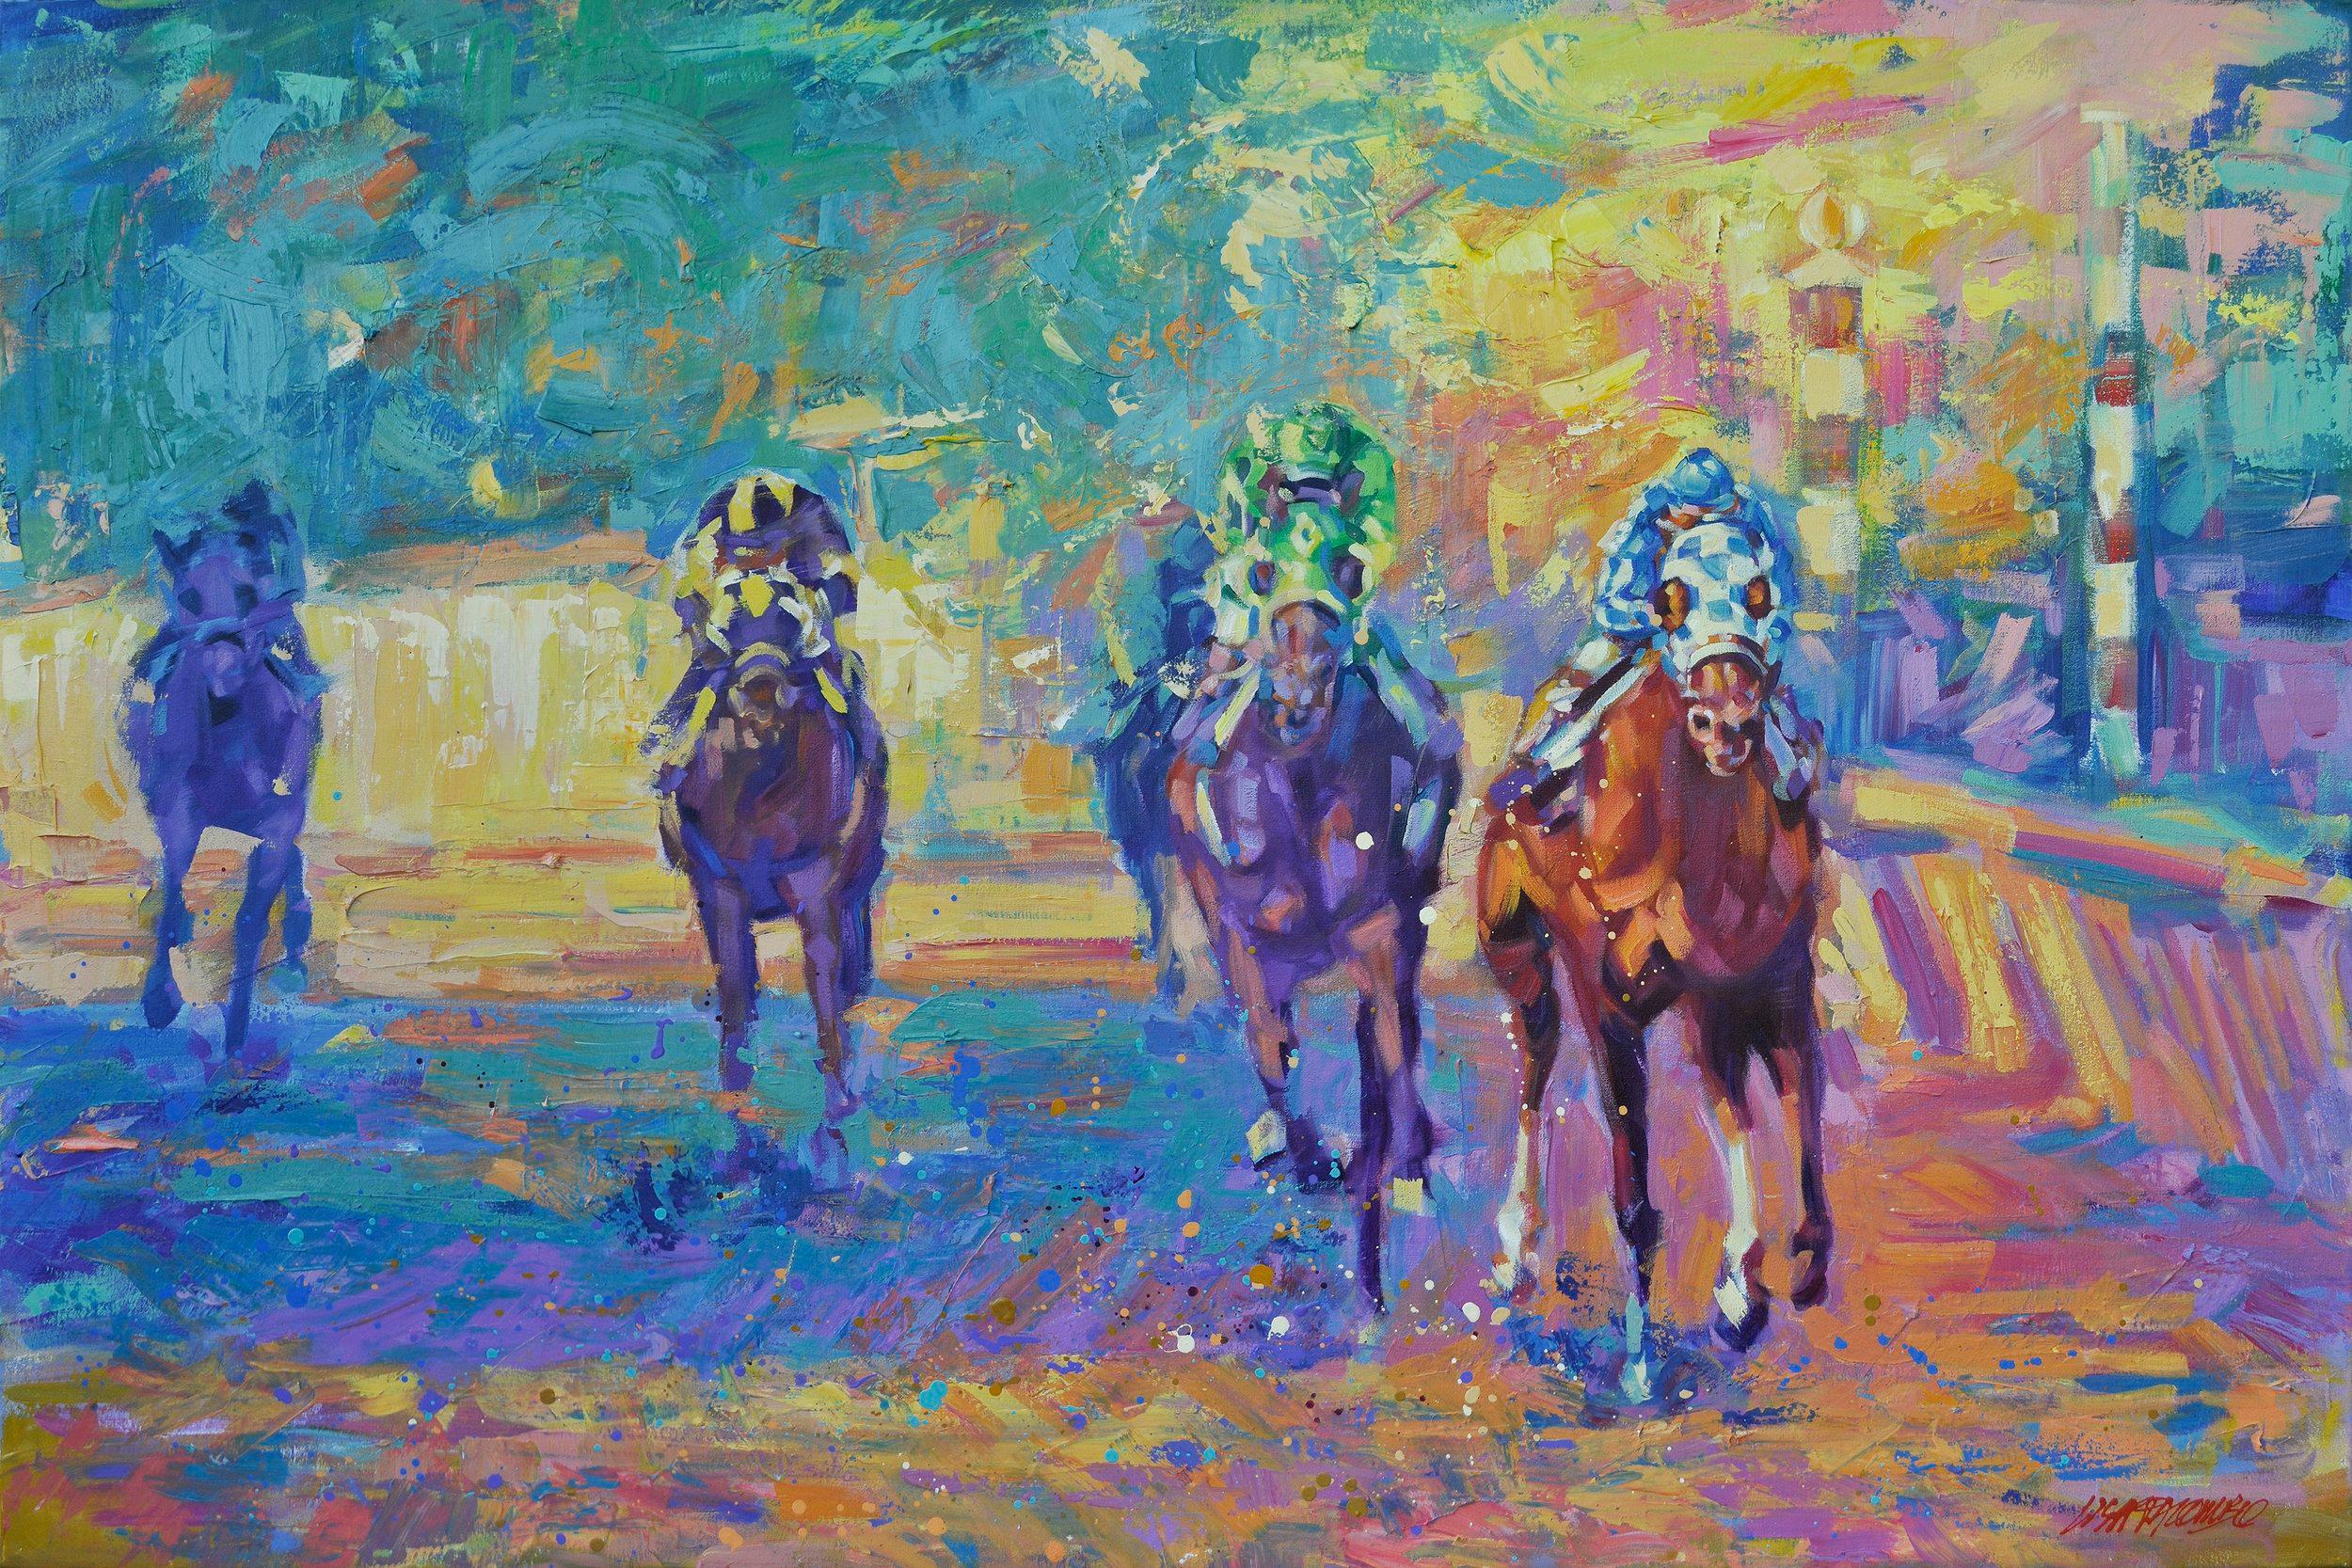 Dieses mutige und farbenfrohe impressionistische Pferdebild "Pulling Ahead" der Künstlerin Lisa Palombo ist ein 40x60 Acrylgemälde auf Leinwand. Abgebildet ist die Rennlegende Secretariat, die mit dem Jockey Ron Turcotte in Big Reds klassischer